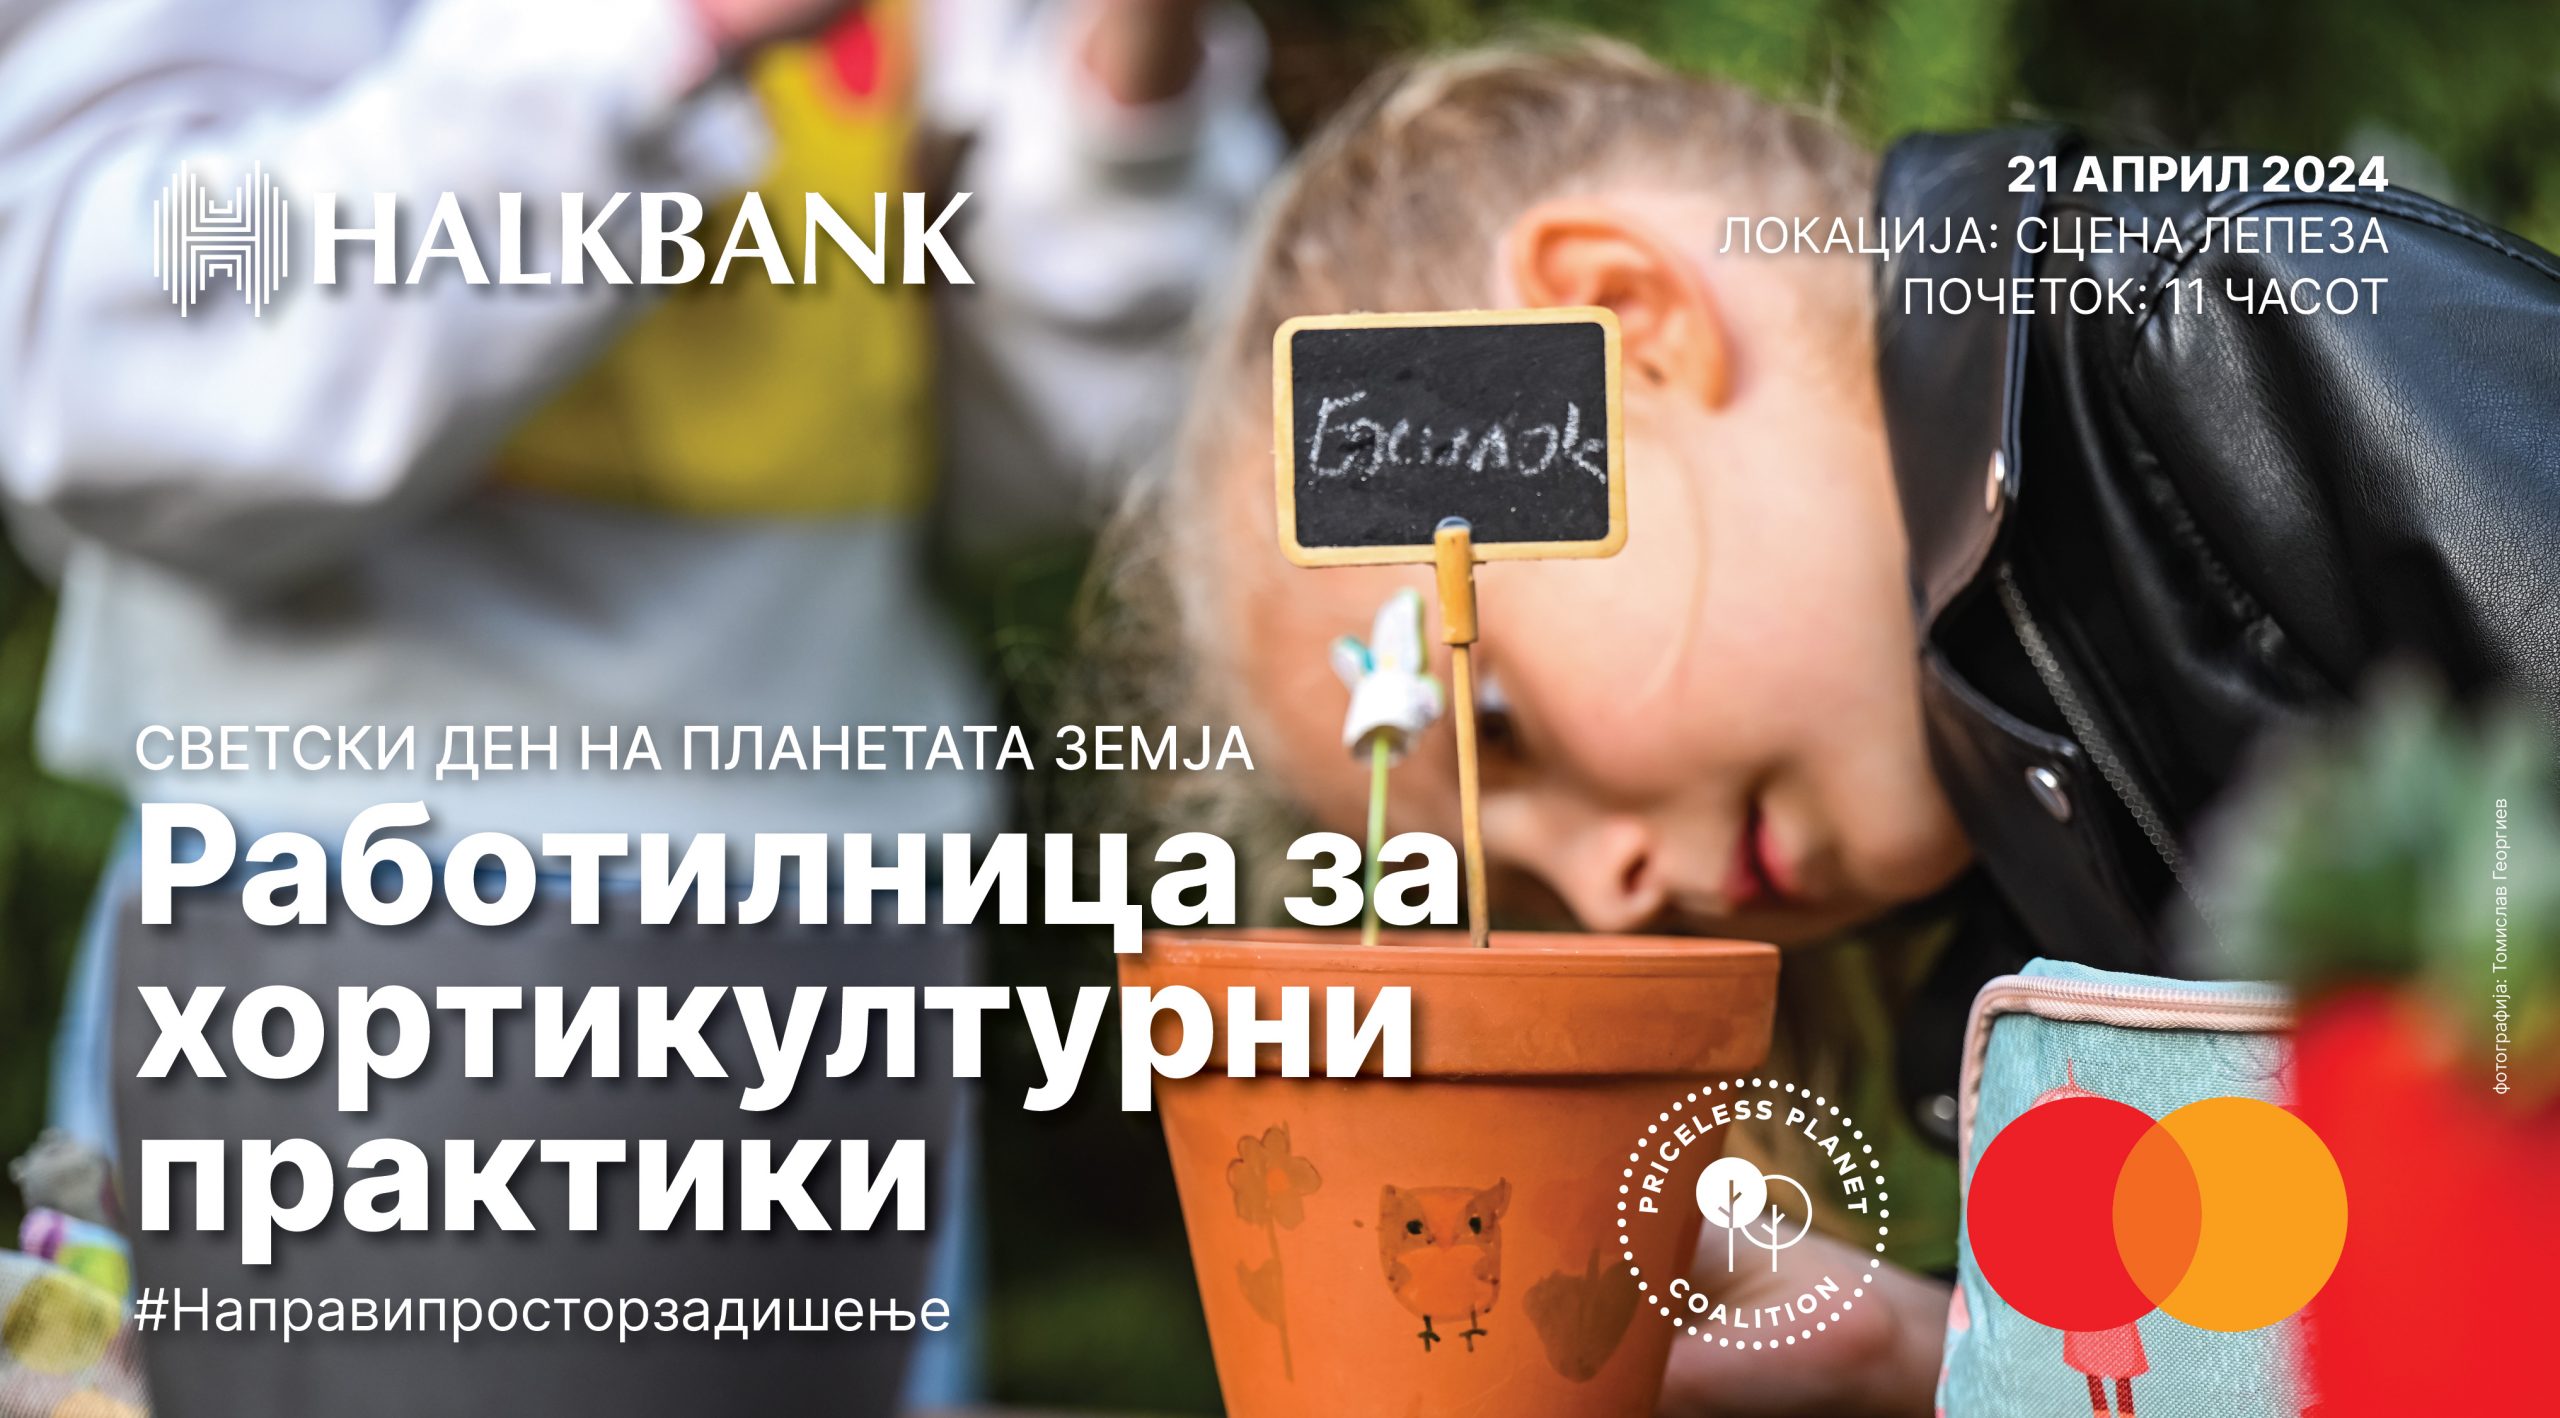 “Halkbank” organizon punëtori për mbrojtje të ambientit jetësor në kuadër të iniciativës “Priceless Planet”